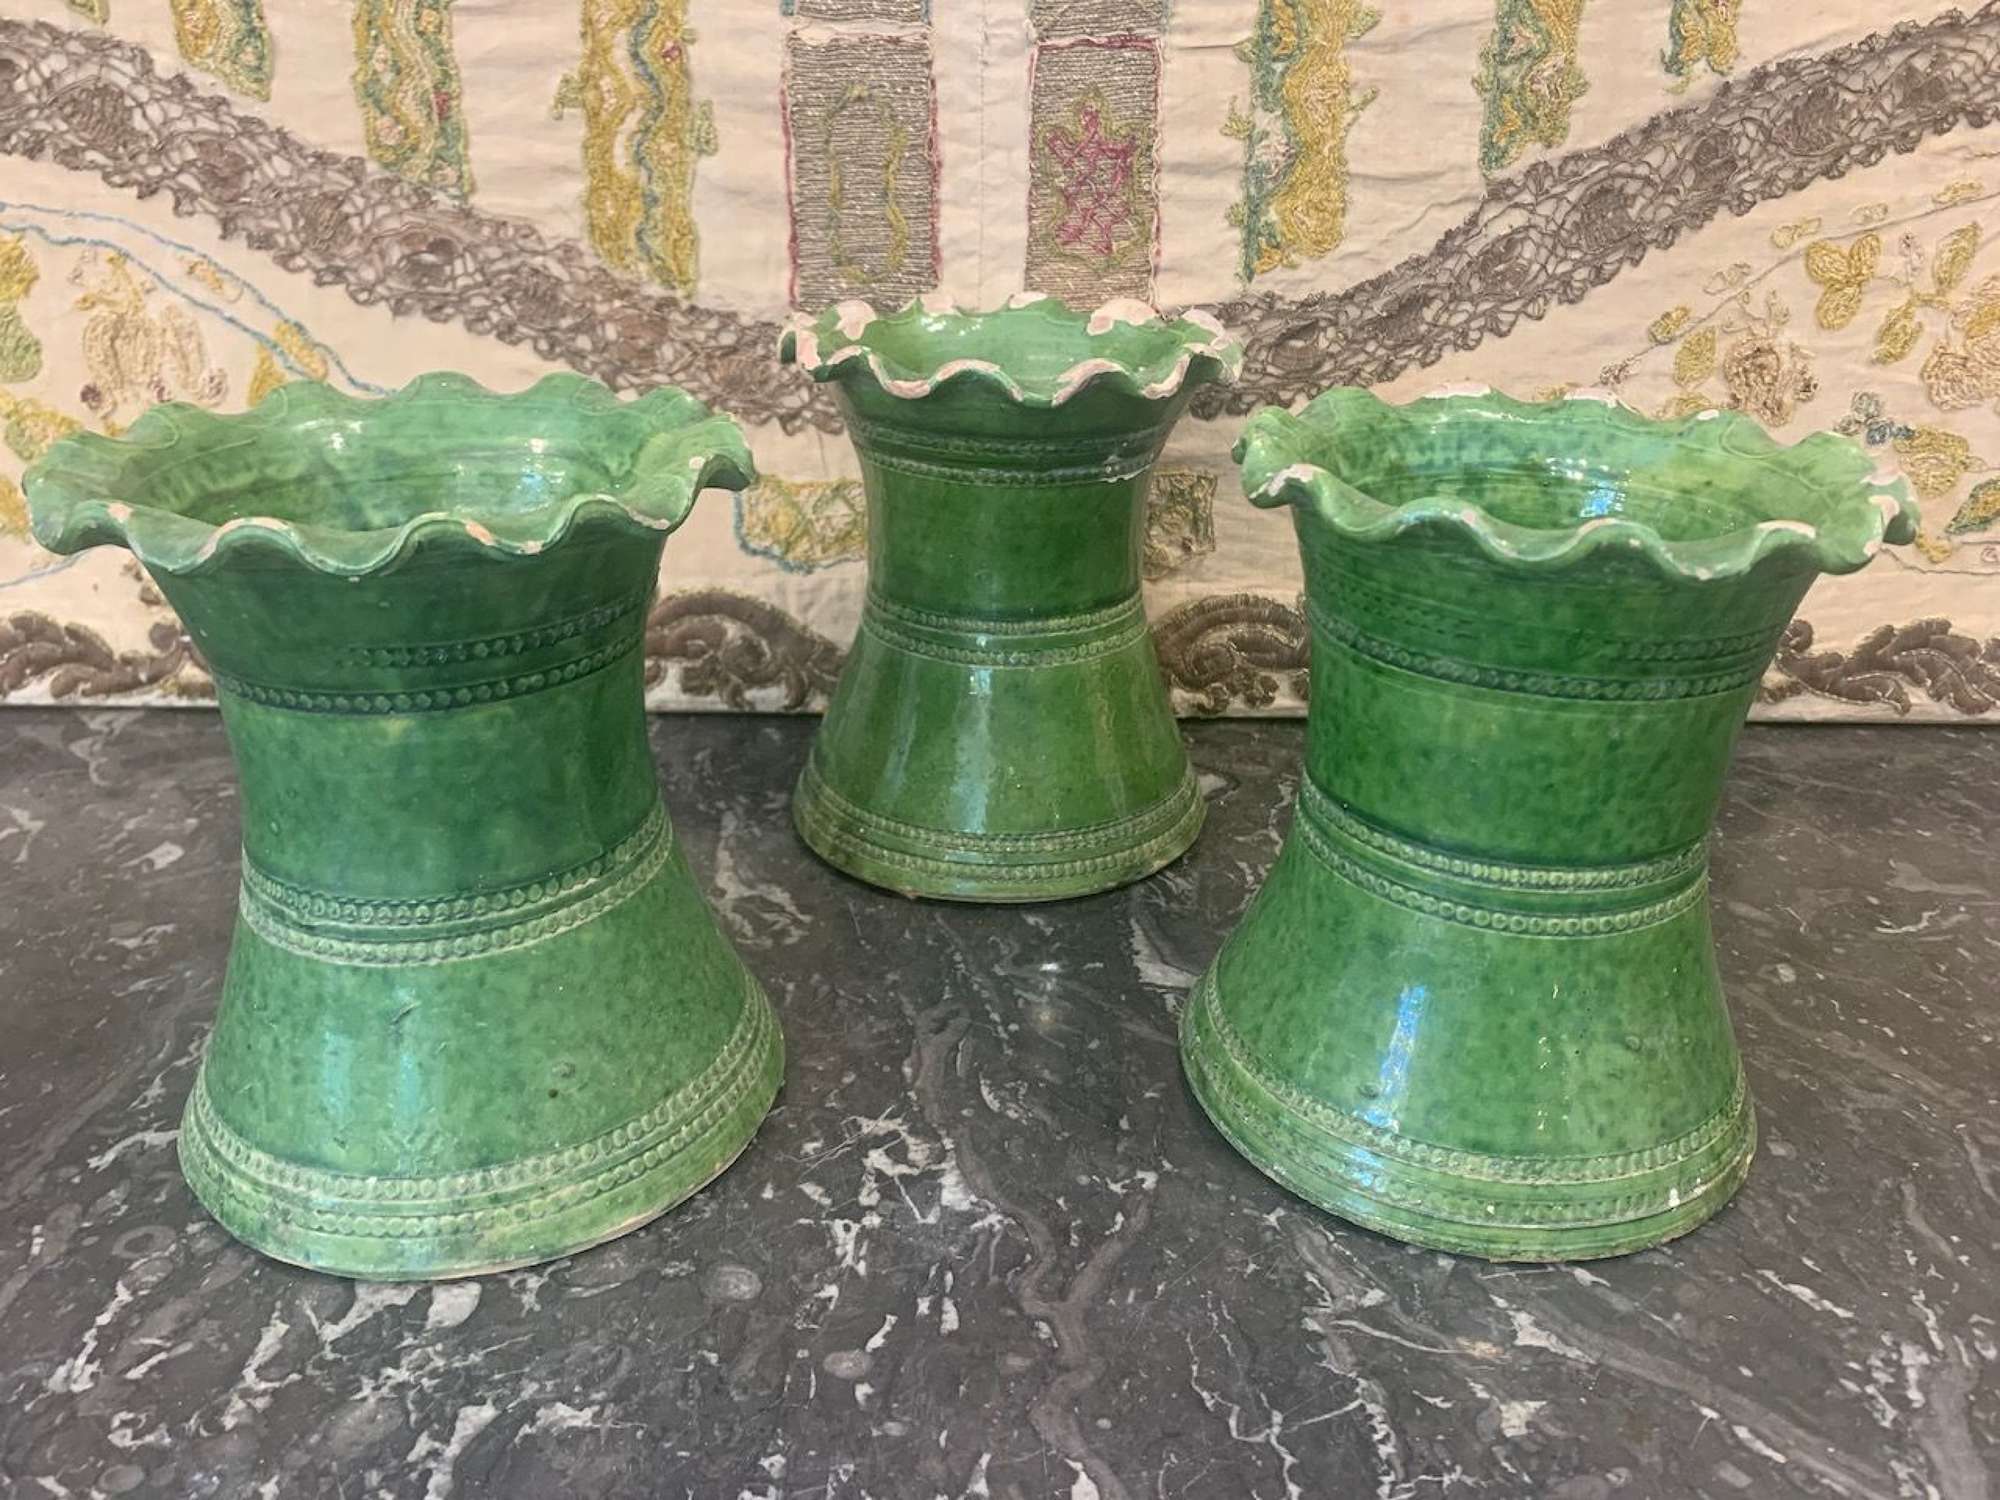 Three green glazed pots